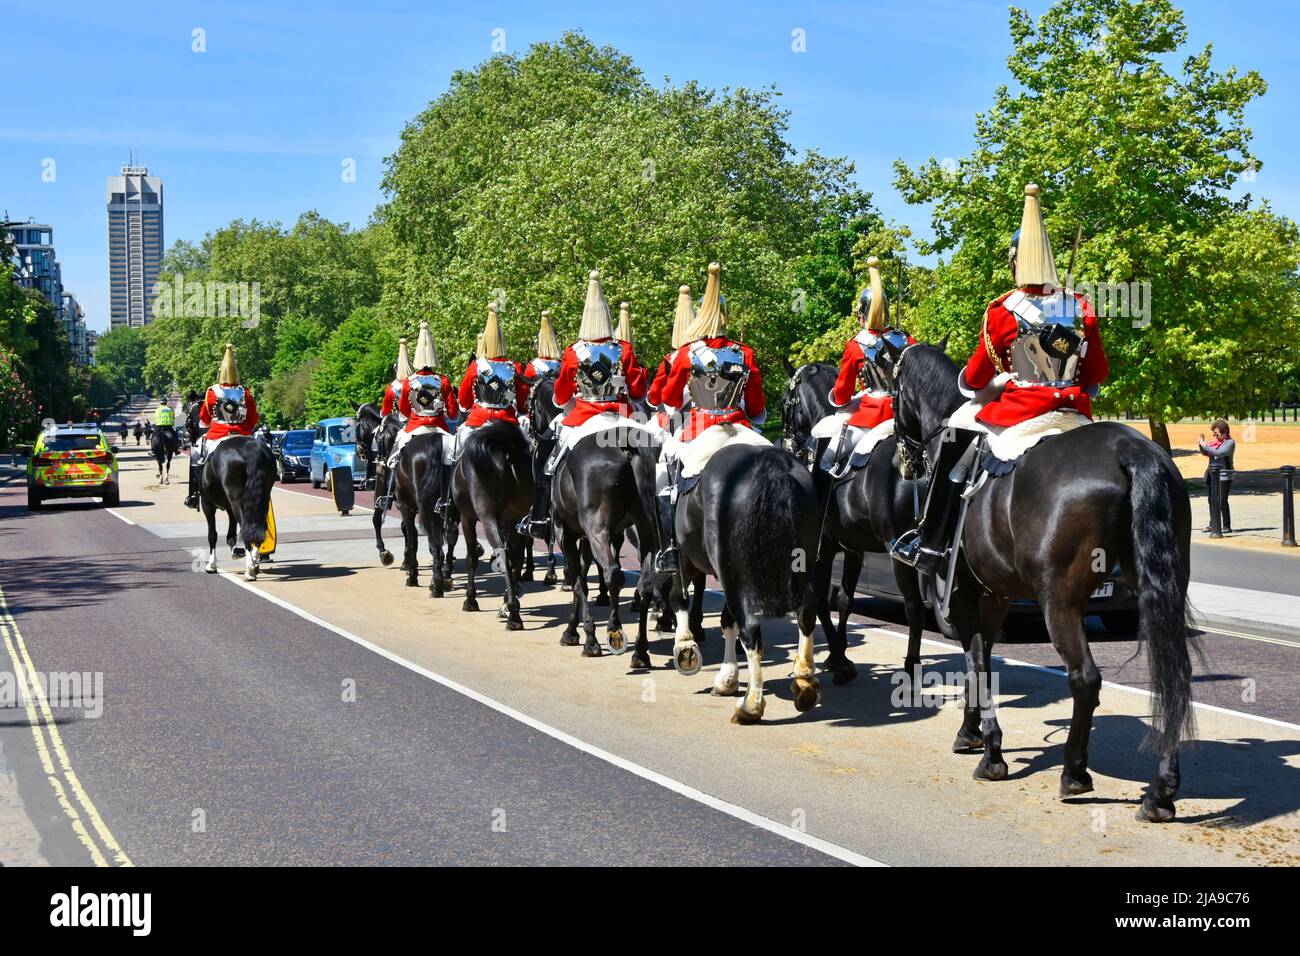 Les gardes de la vie de Cavalry et l'escorte de la police à South Carriage Drive retournent à Hyde Park Knightsbridge Barracks à un pâté de maisons de la tour distante de Londres Angleterre Royaume-Uni Banque D'Images